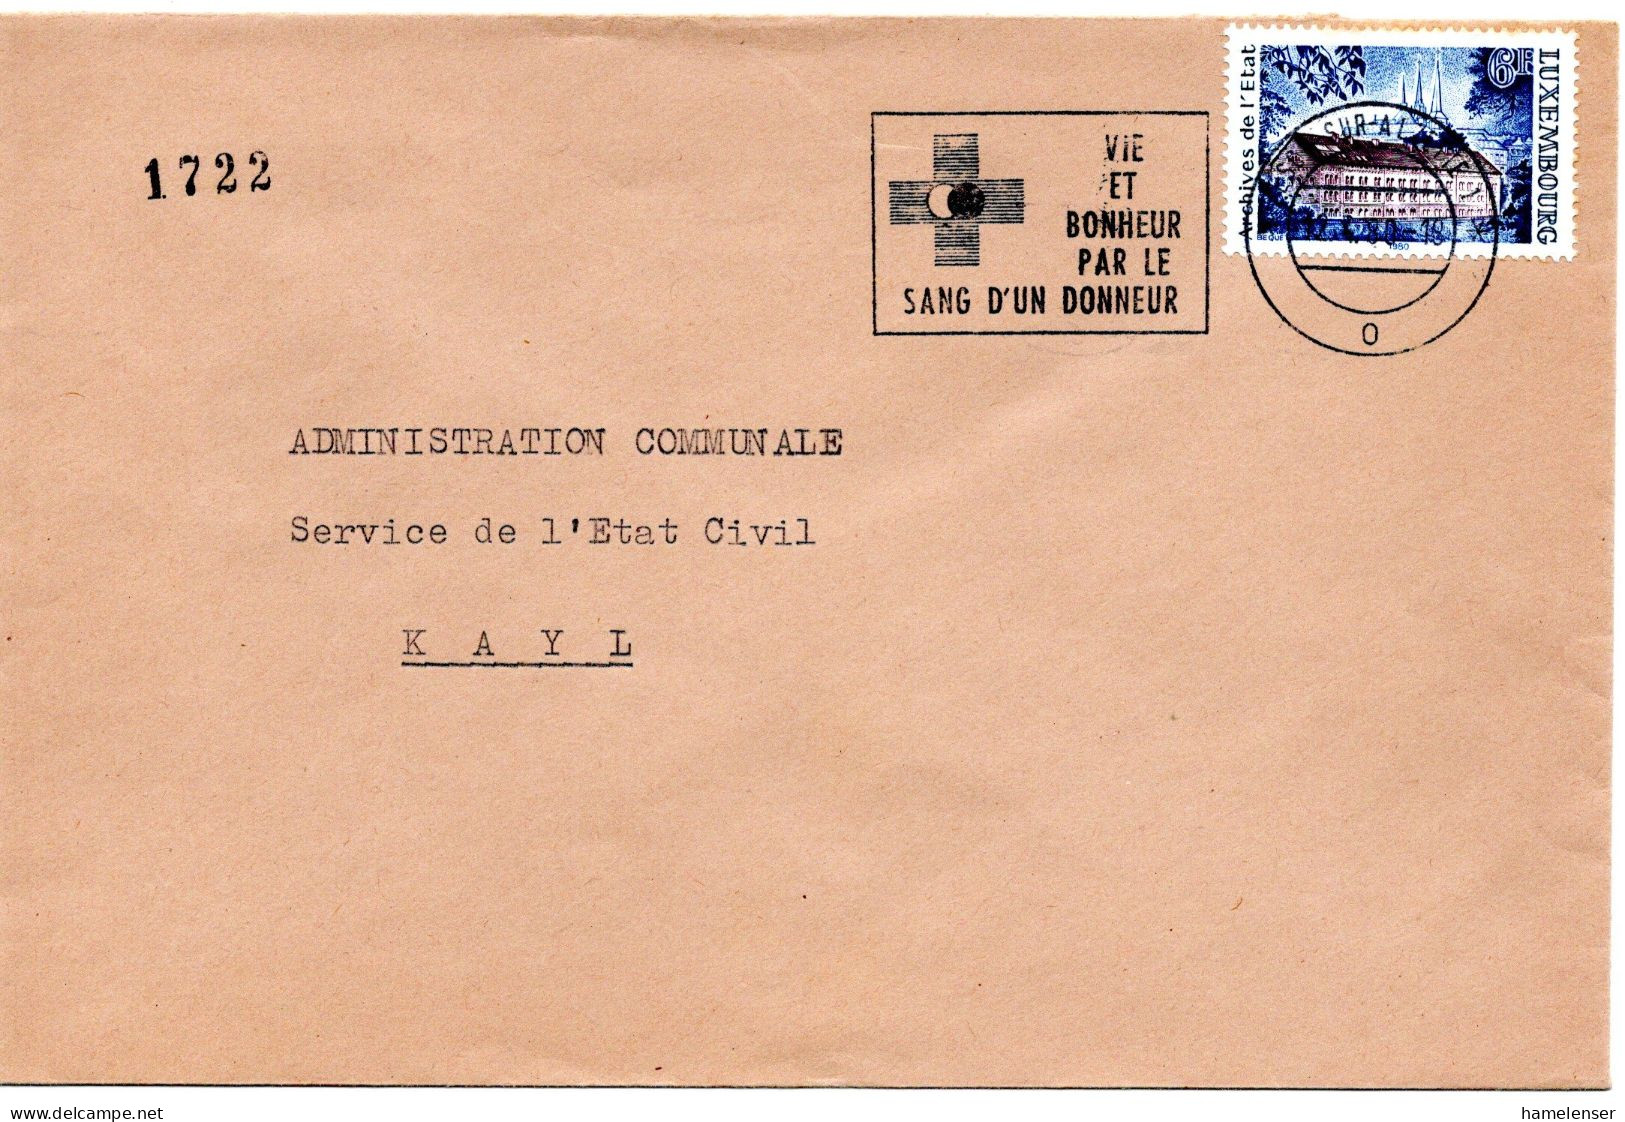 60690 - Luxemburg - 1980 - 6F Staatsarchiv EF A Bf ESCH - VIE ET BONHEUR PAR LE SANG D'UN DONNEUR -> Kayl - Médecine